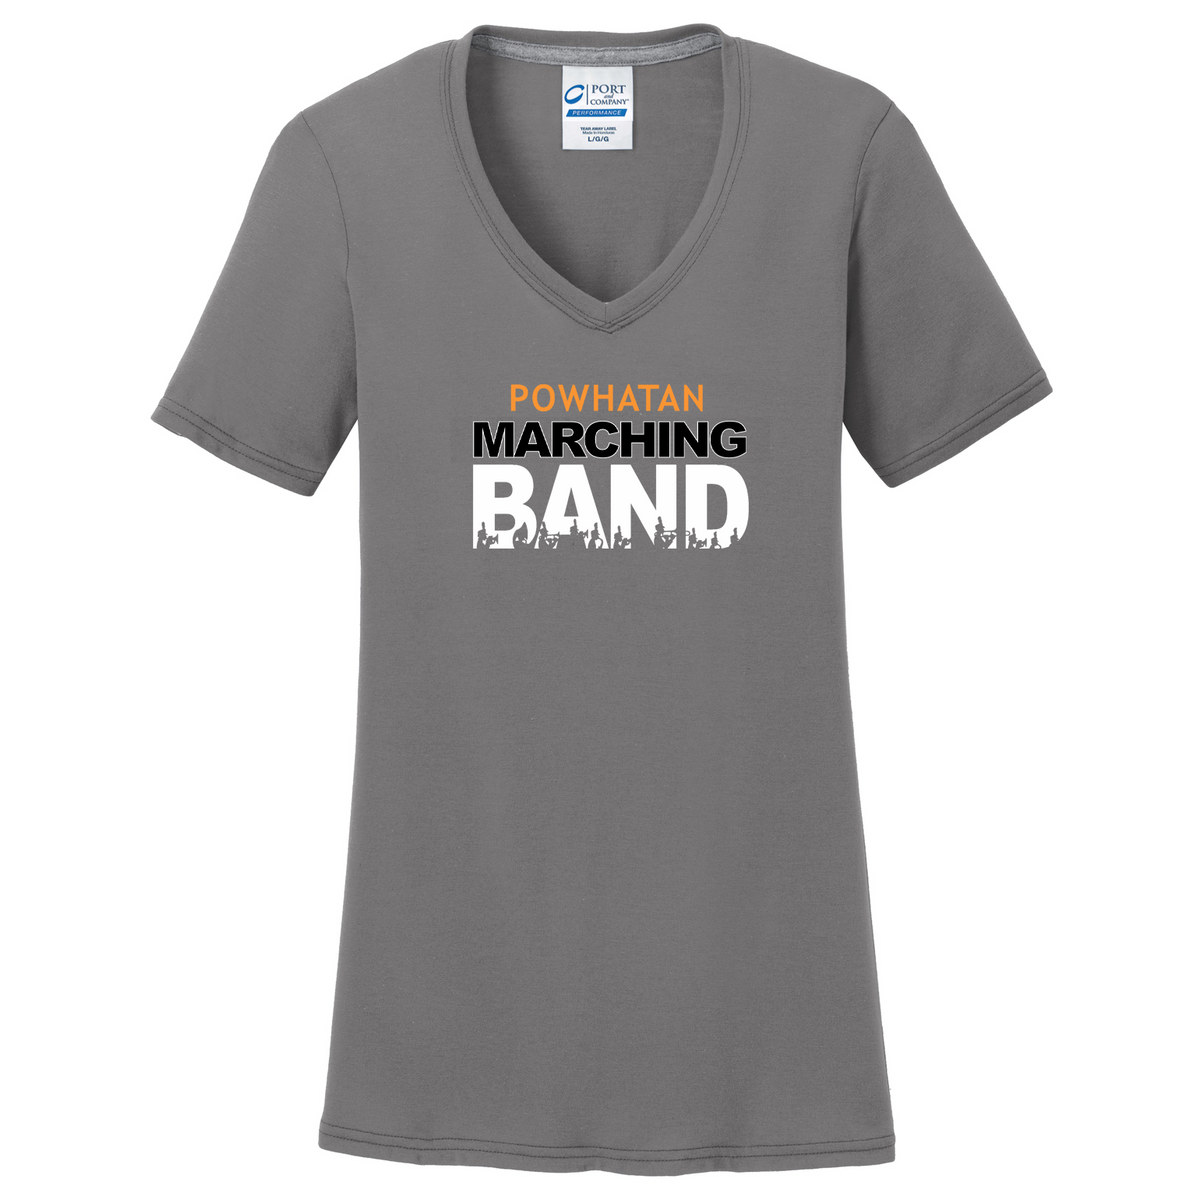 Powhatan Marching Band Women's T-Shirt